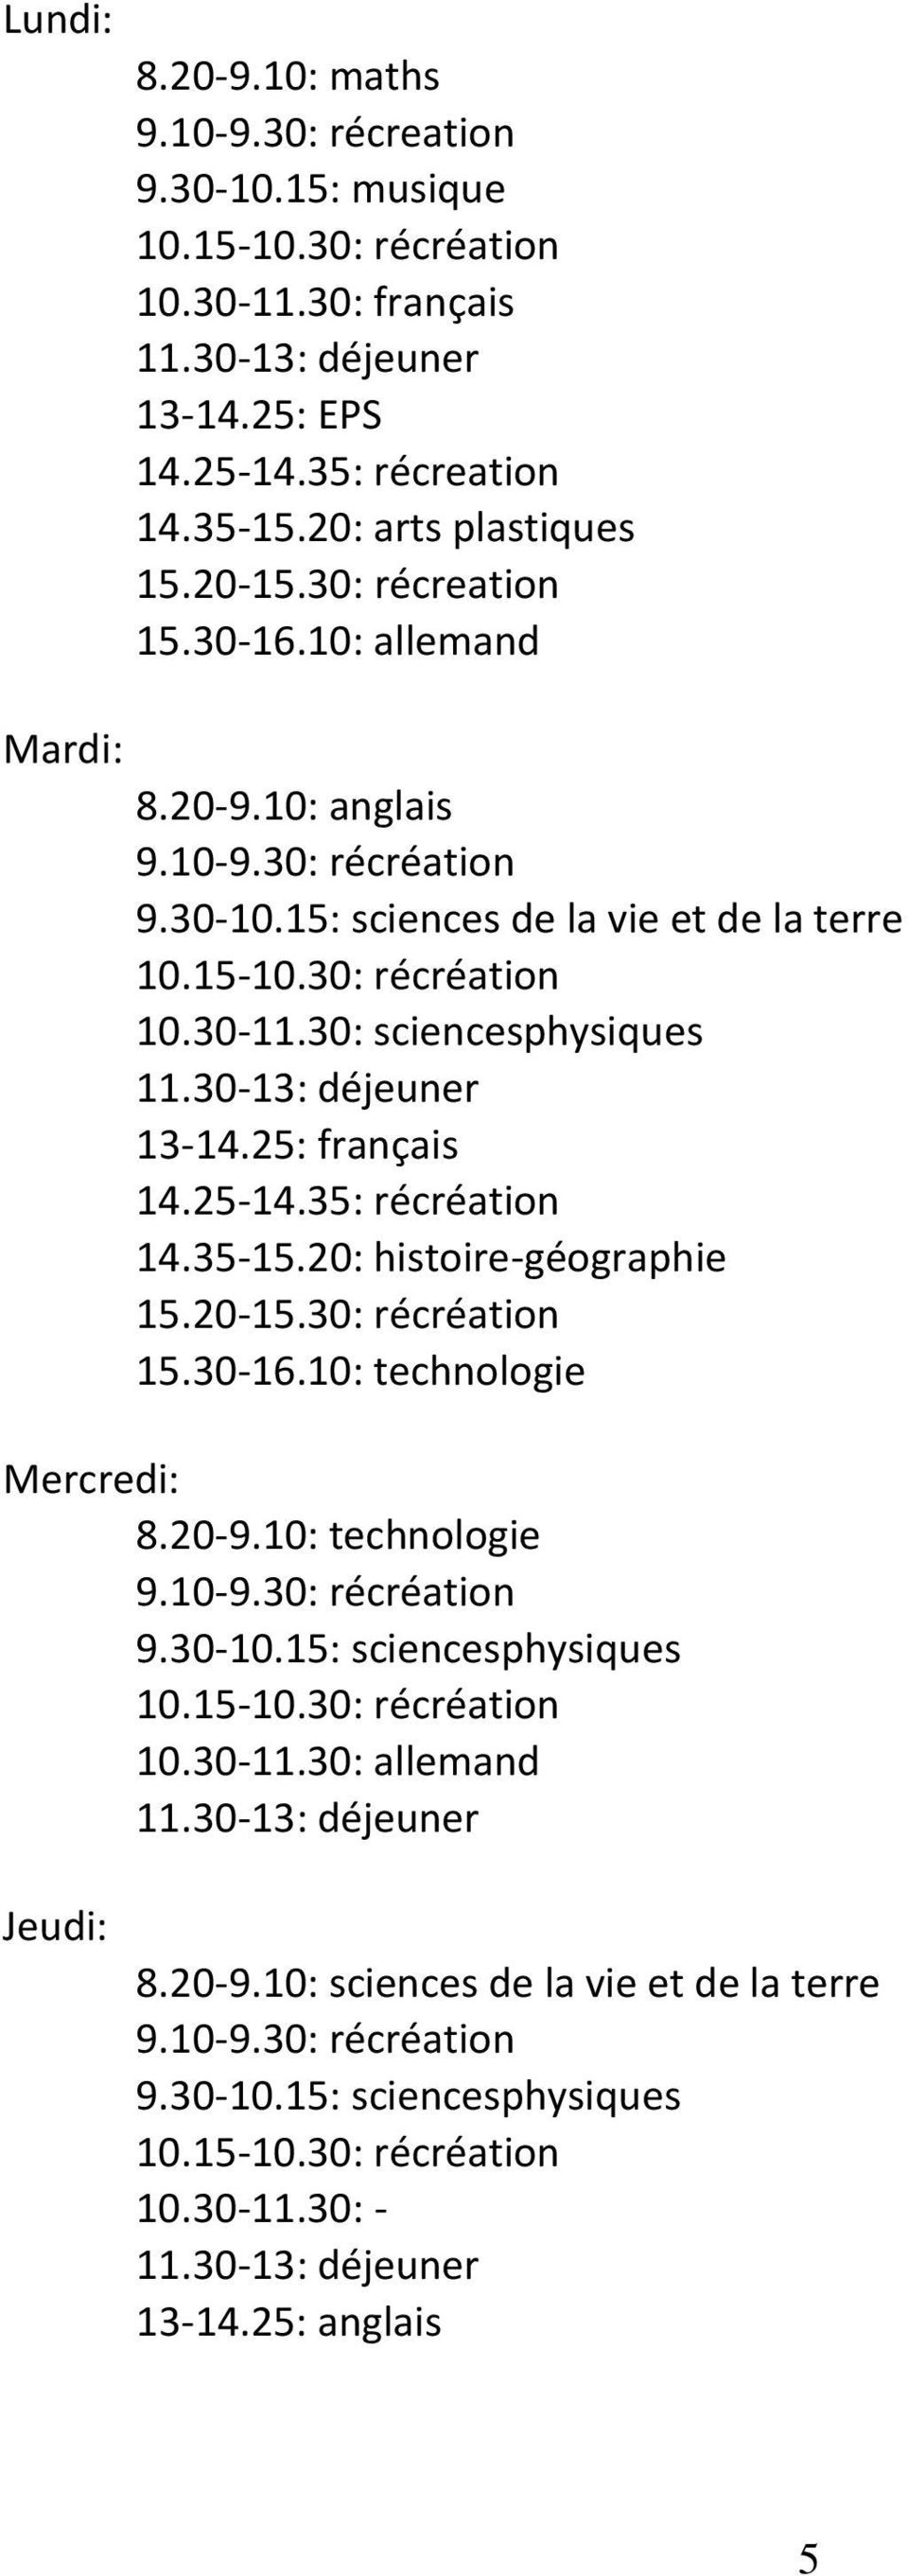 5: français 4.5-4.35: récréation 4.35-5.0: histoire-géographie 5.0-5.30: récréation 5.30-6.0: technologie Mercredi: 8.0-9.0: technologie 9.0-9.30: récréation 9.30-0.5: sciencesphysiques 0.5-0.